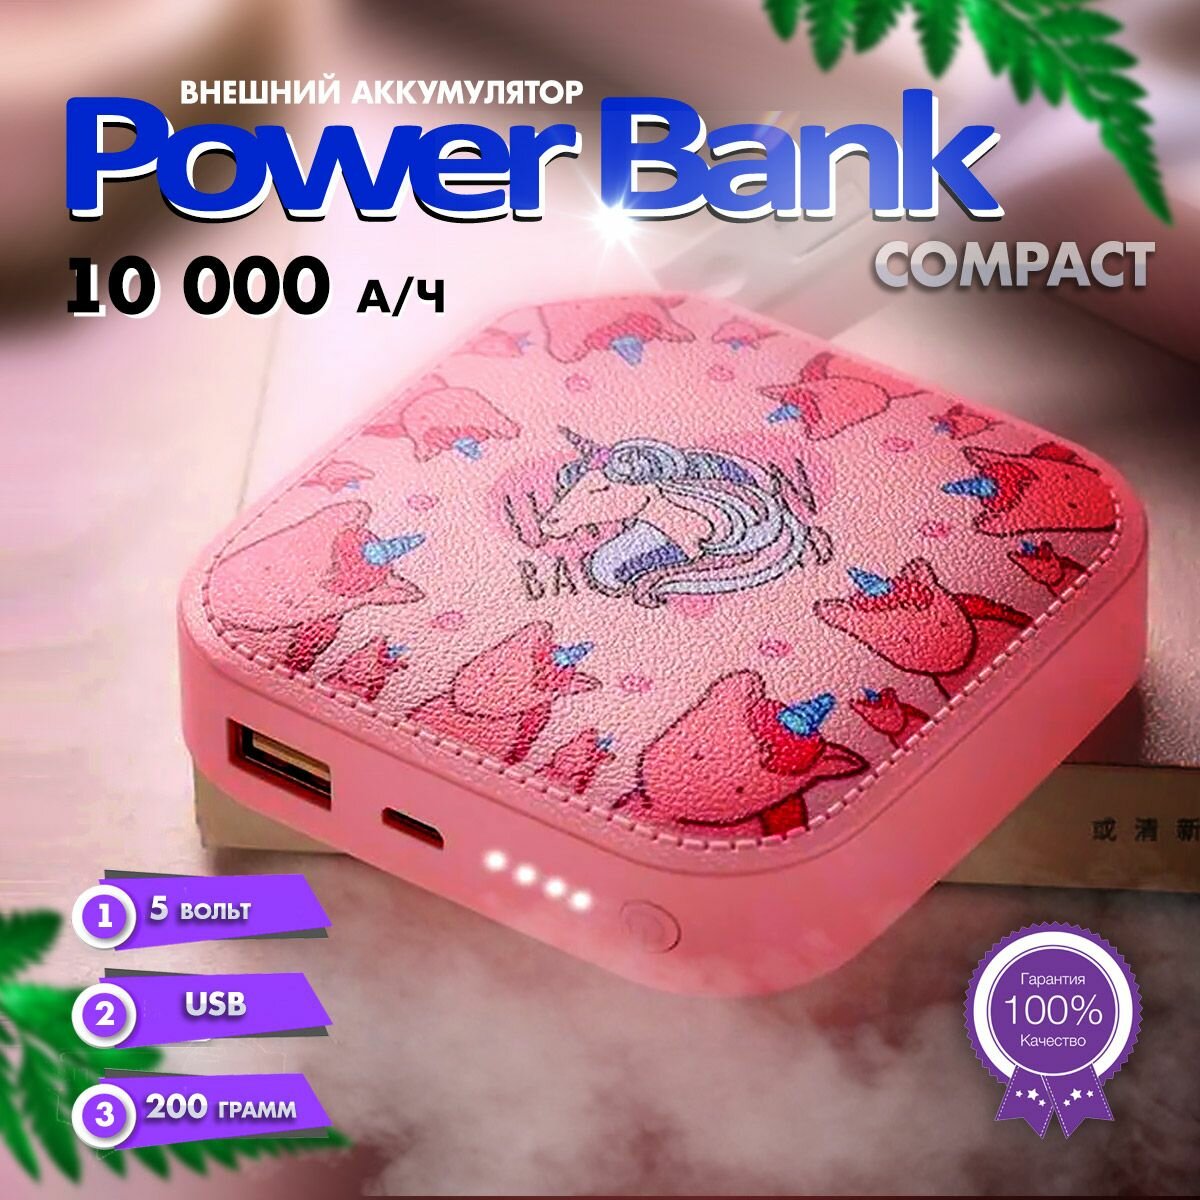 Внешний аккумулятор повербанк 10000мА Power Bank розовые единороги Compact